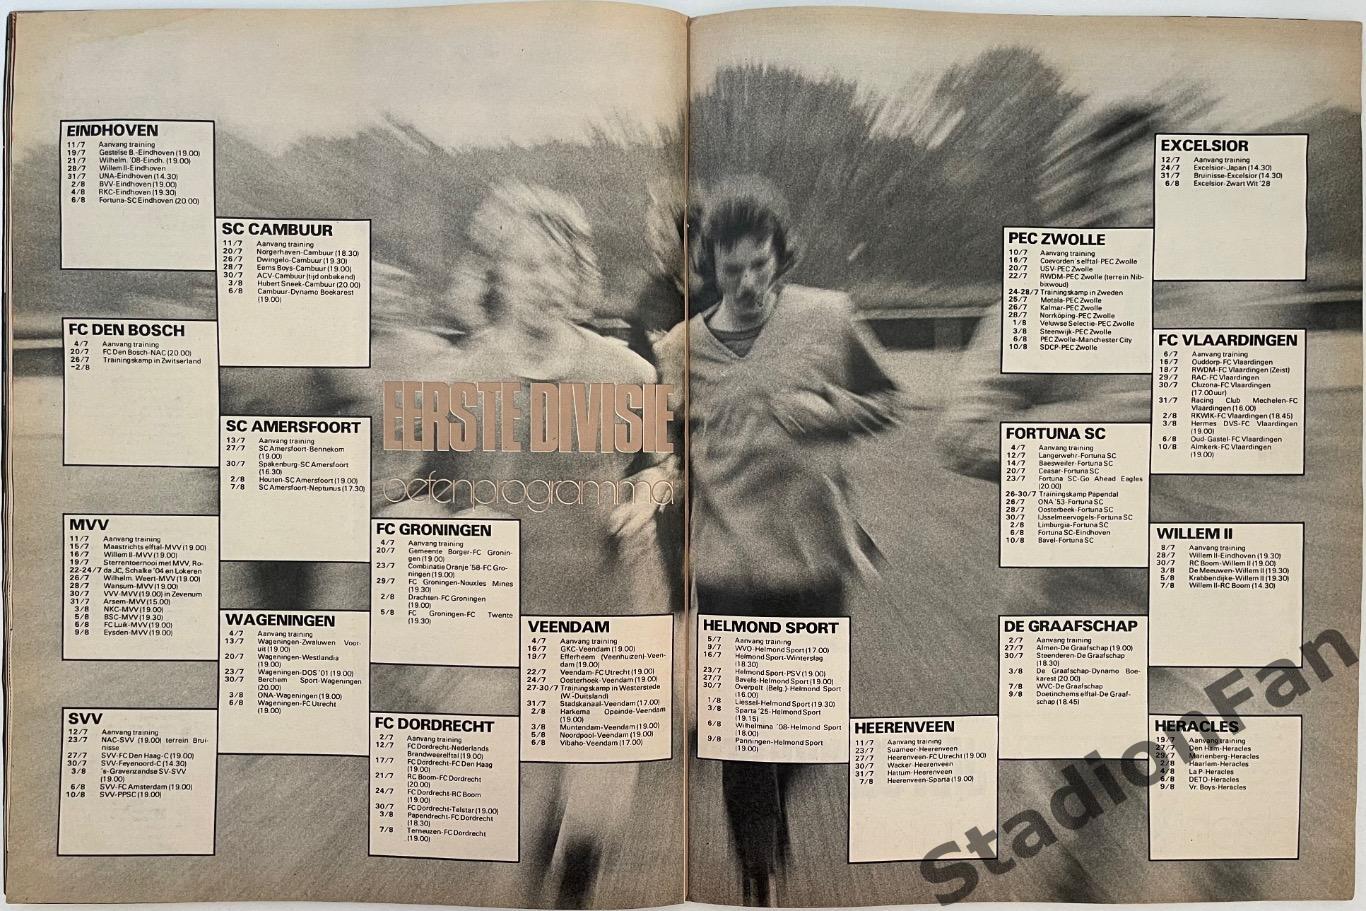 Журнал Voetbal nr.27 - 1977 год. 4